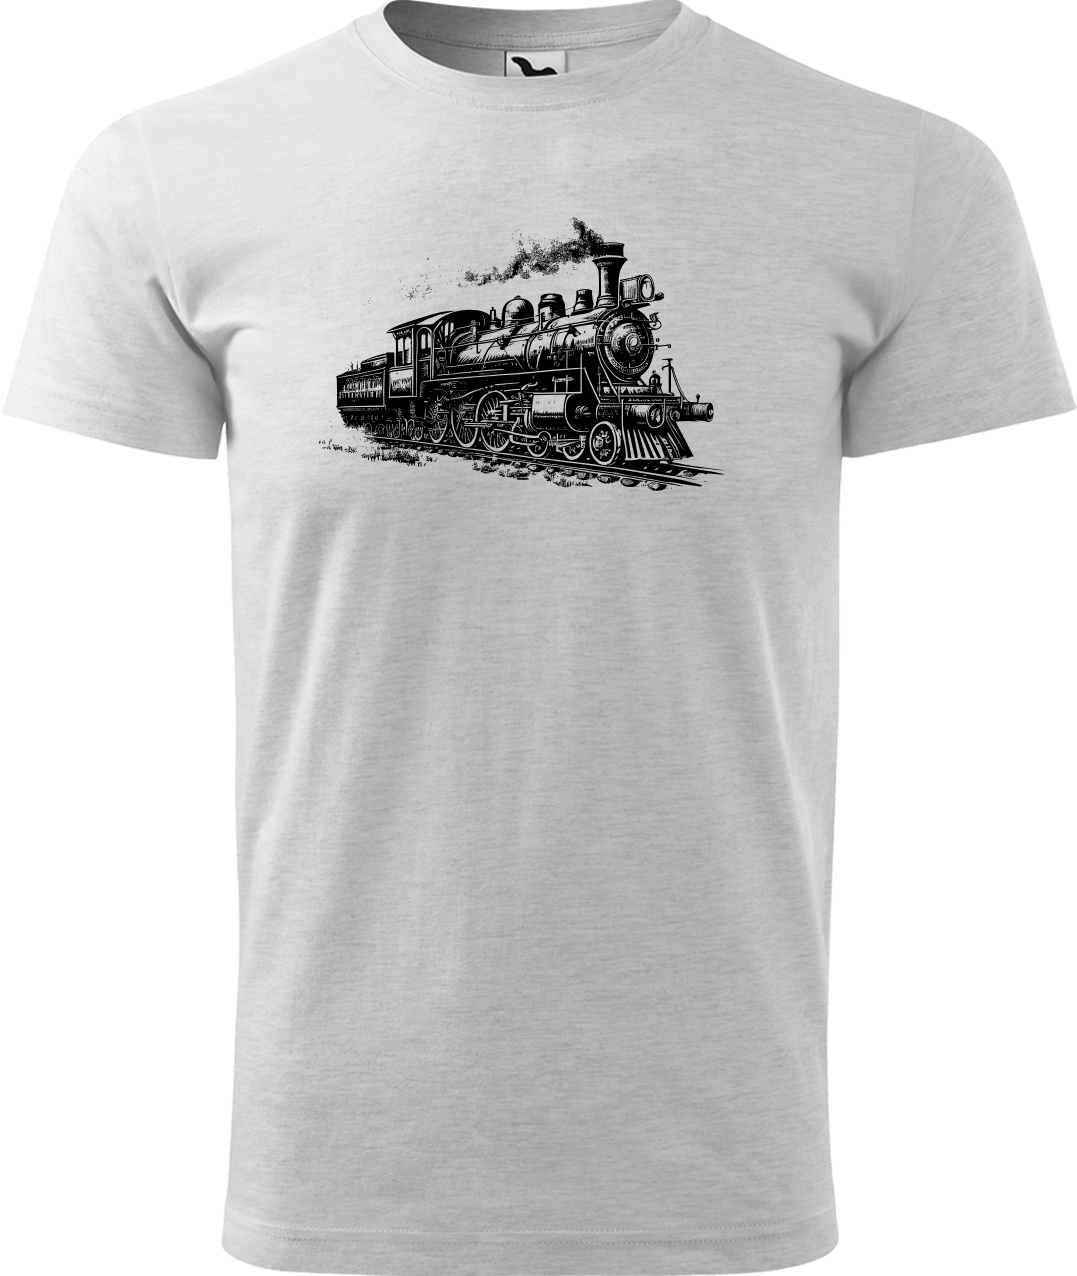 Tričko s vlakem - Stará lokomotiva Velikost: XL, Barva: Světle šedý melír (03)